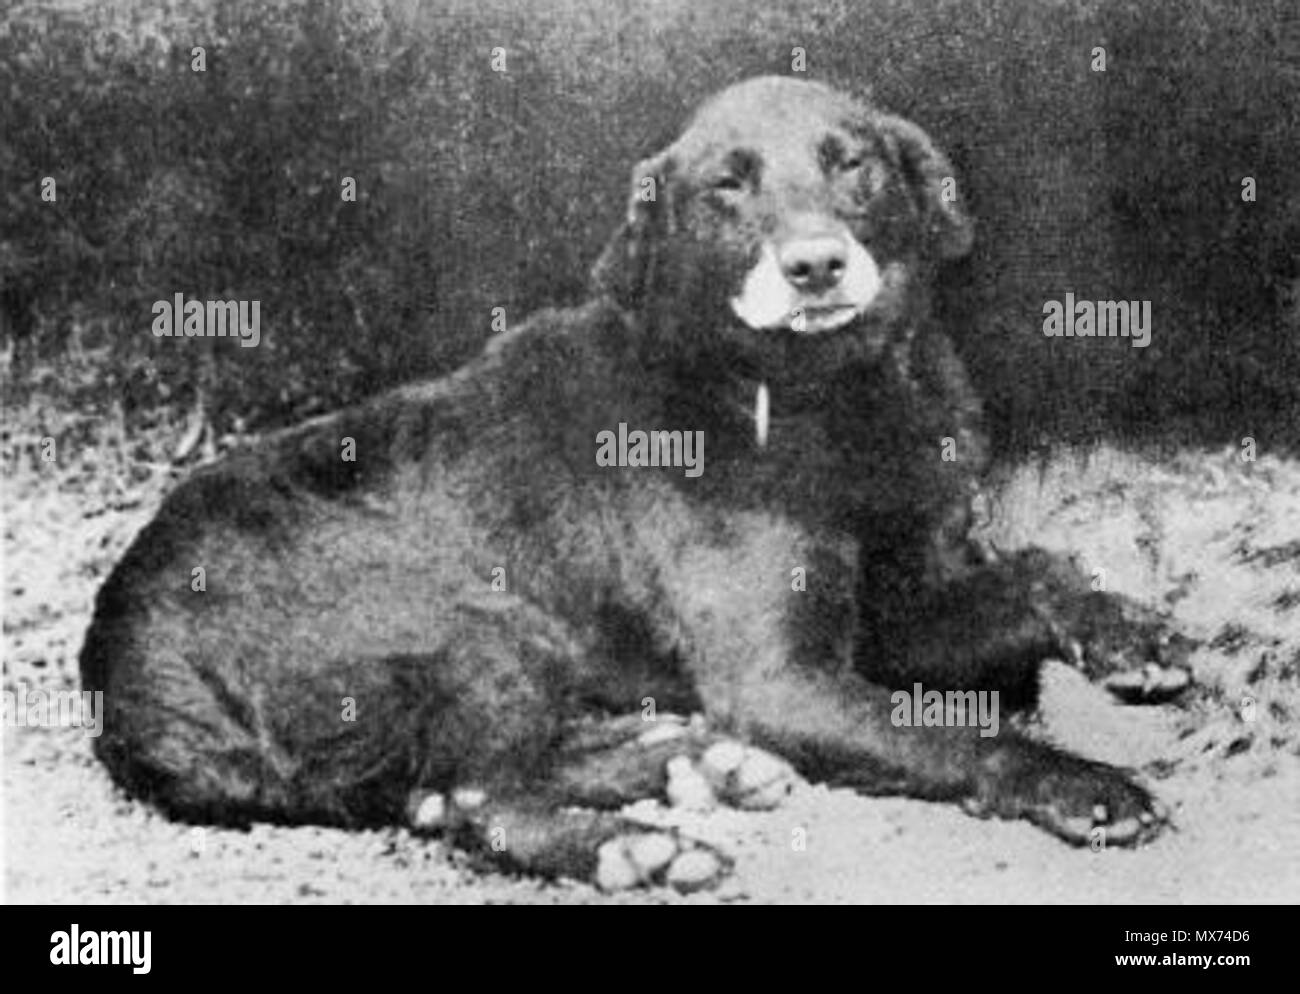 . Buccleuch Avon (b. 1885), als der Urahn aller modernen Labrador Retriever. Datum unbekannt 1890 - 1895. Siehe oben/unten 103 Buccleuch Avon (1885) Stockfoto